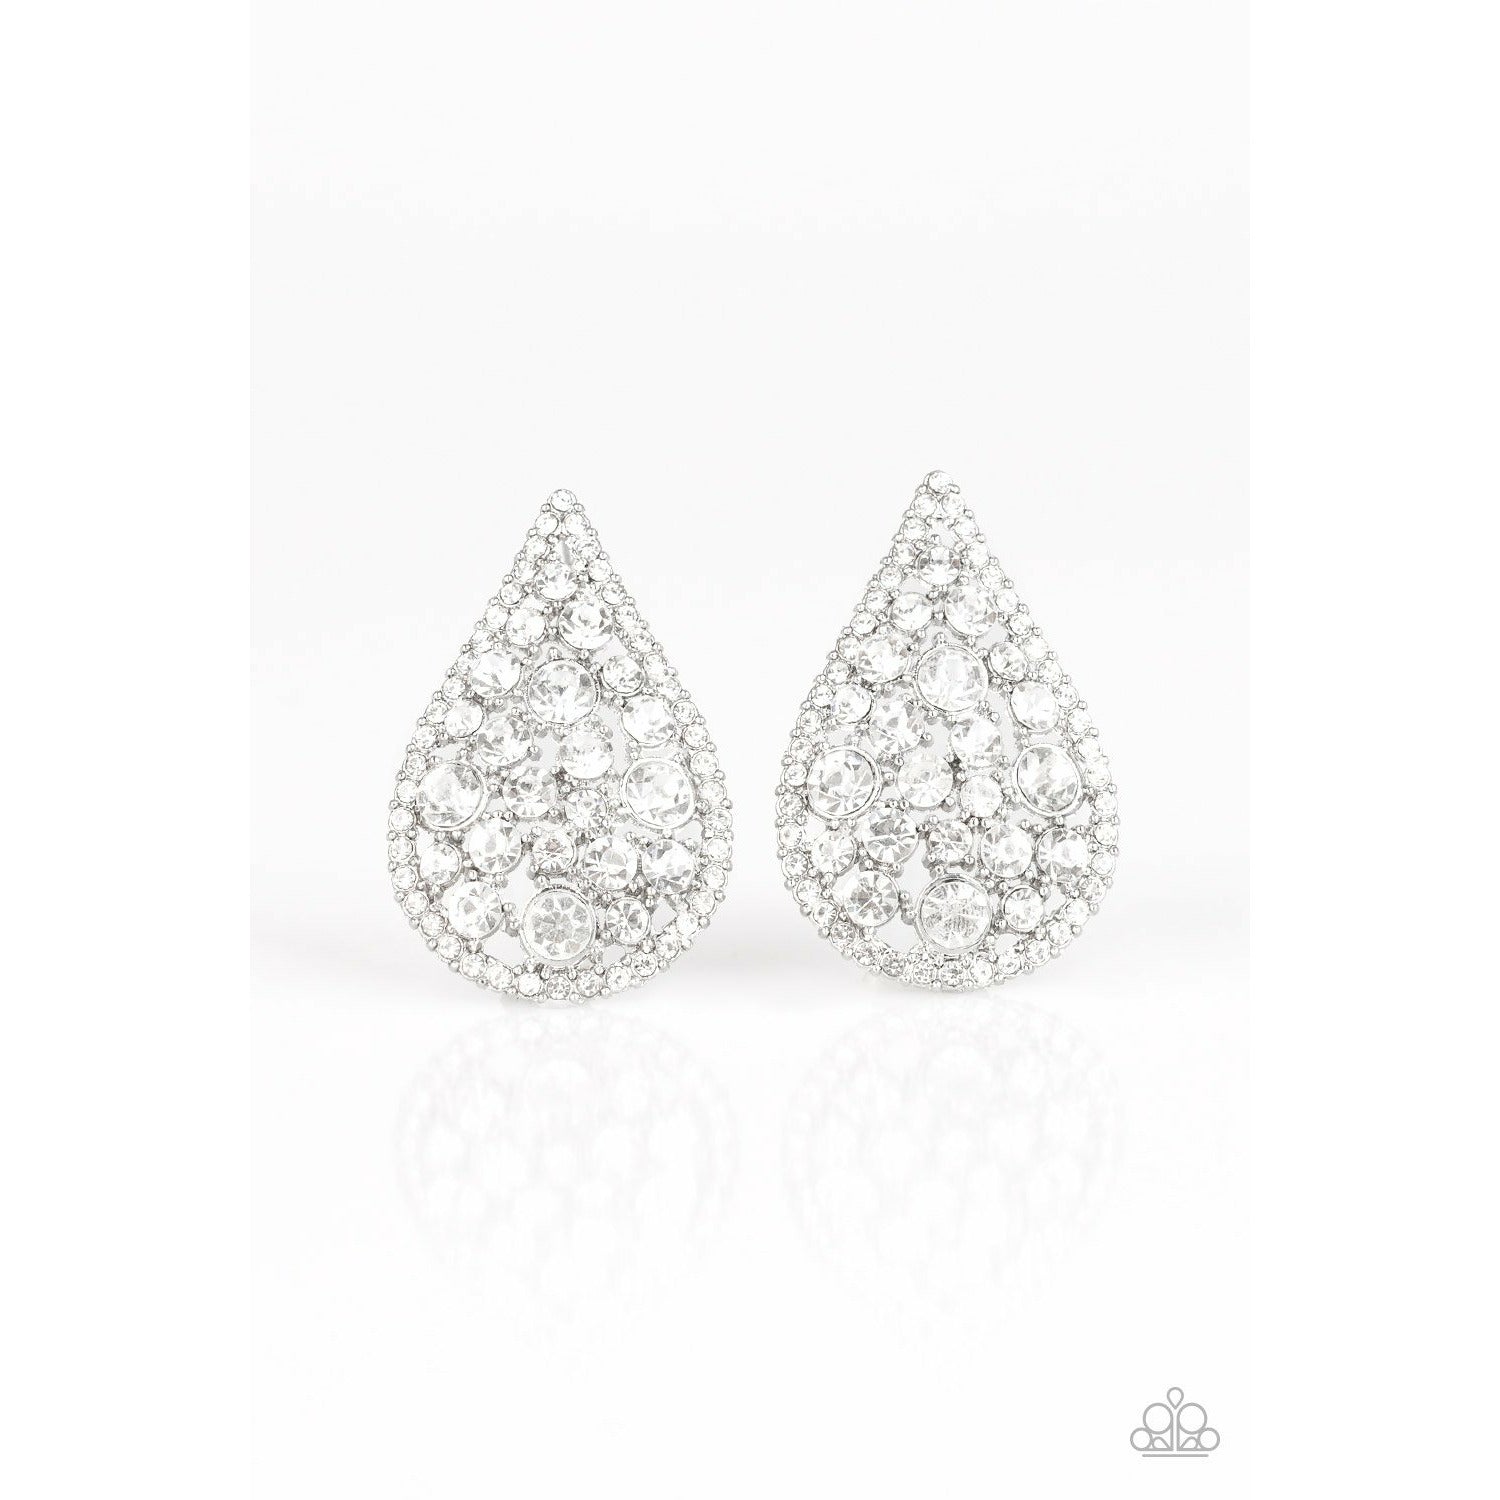 REIGN-Storm white earrings – The Sparkling Diva 1